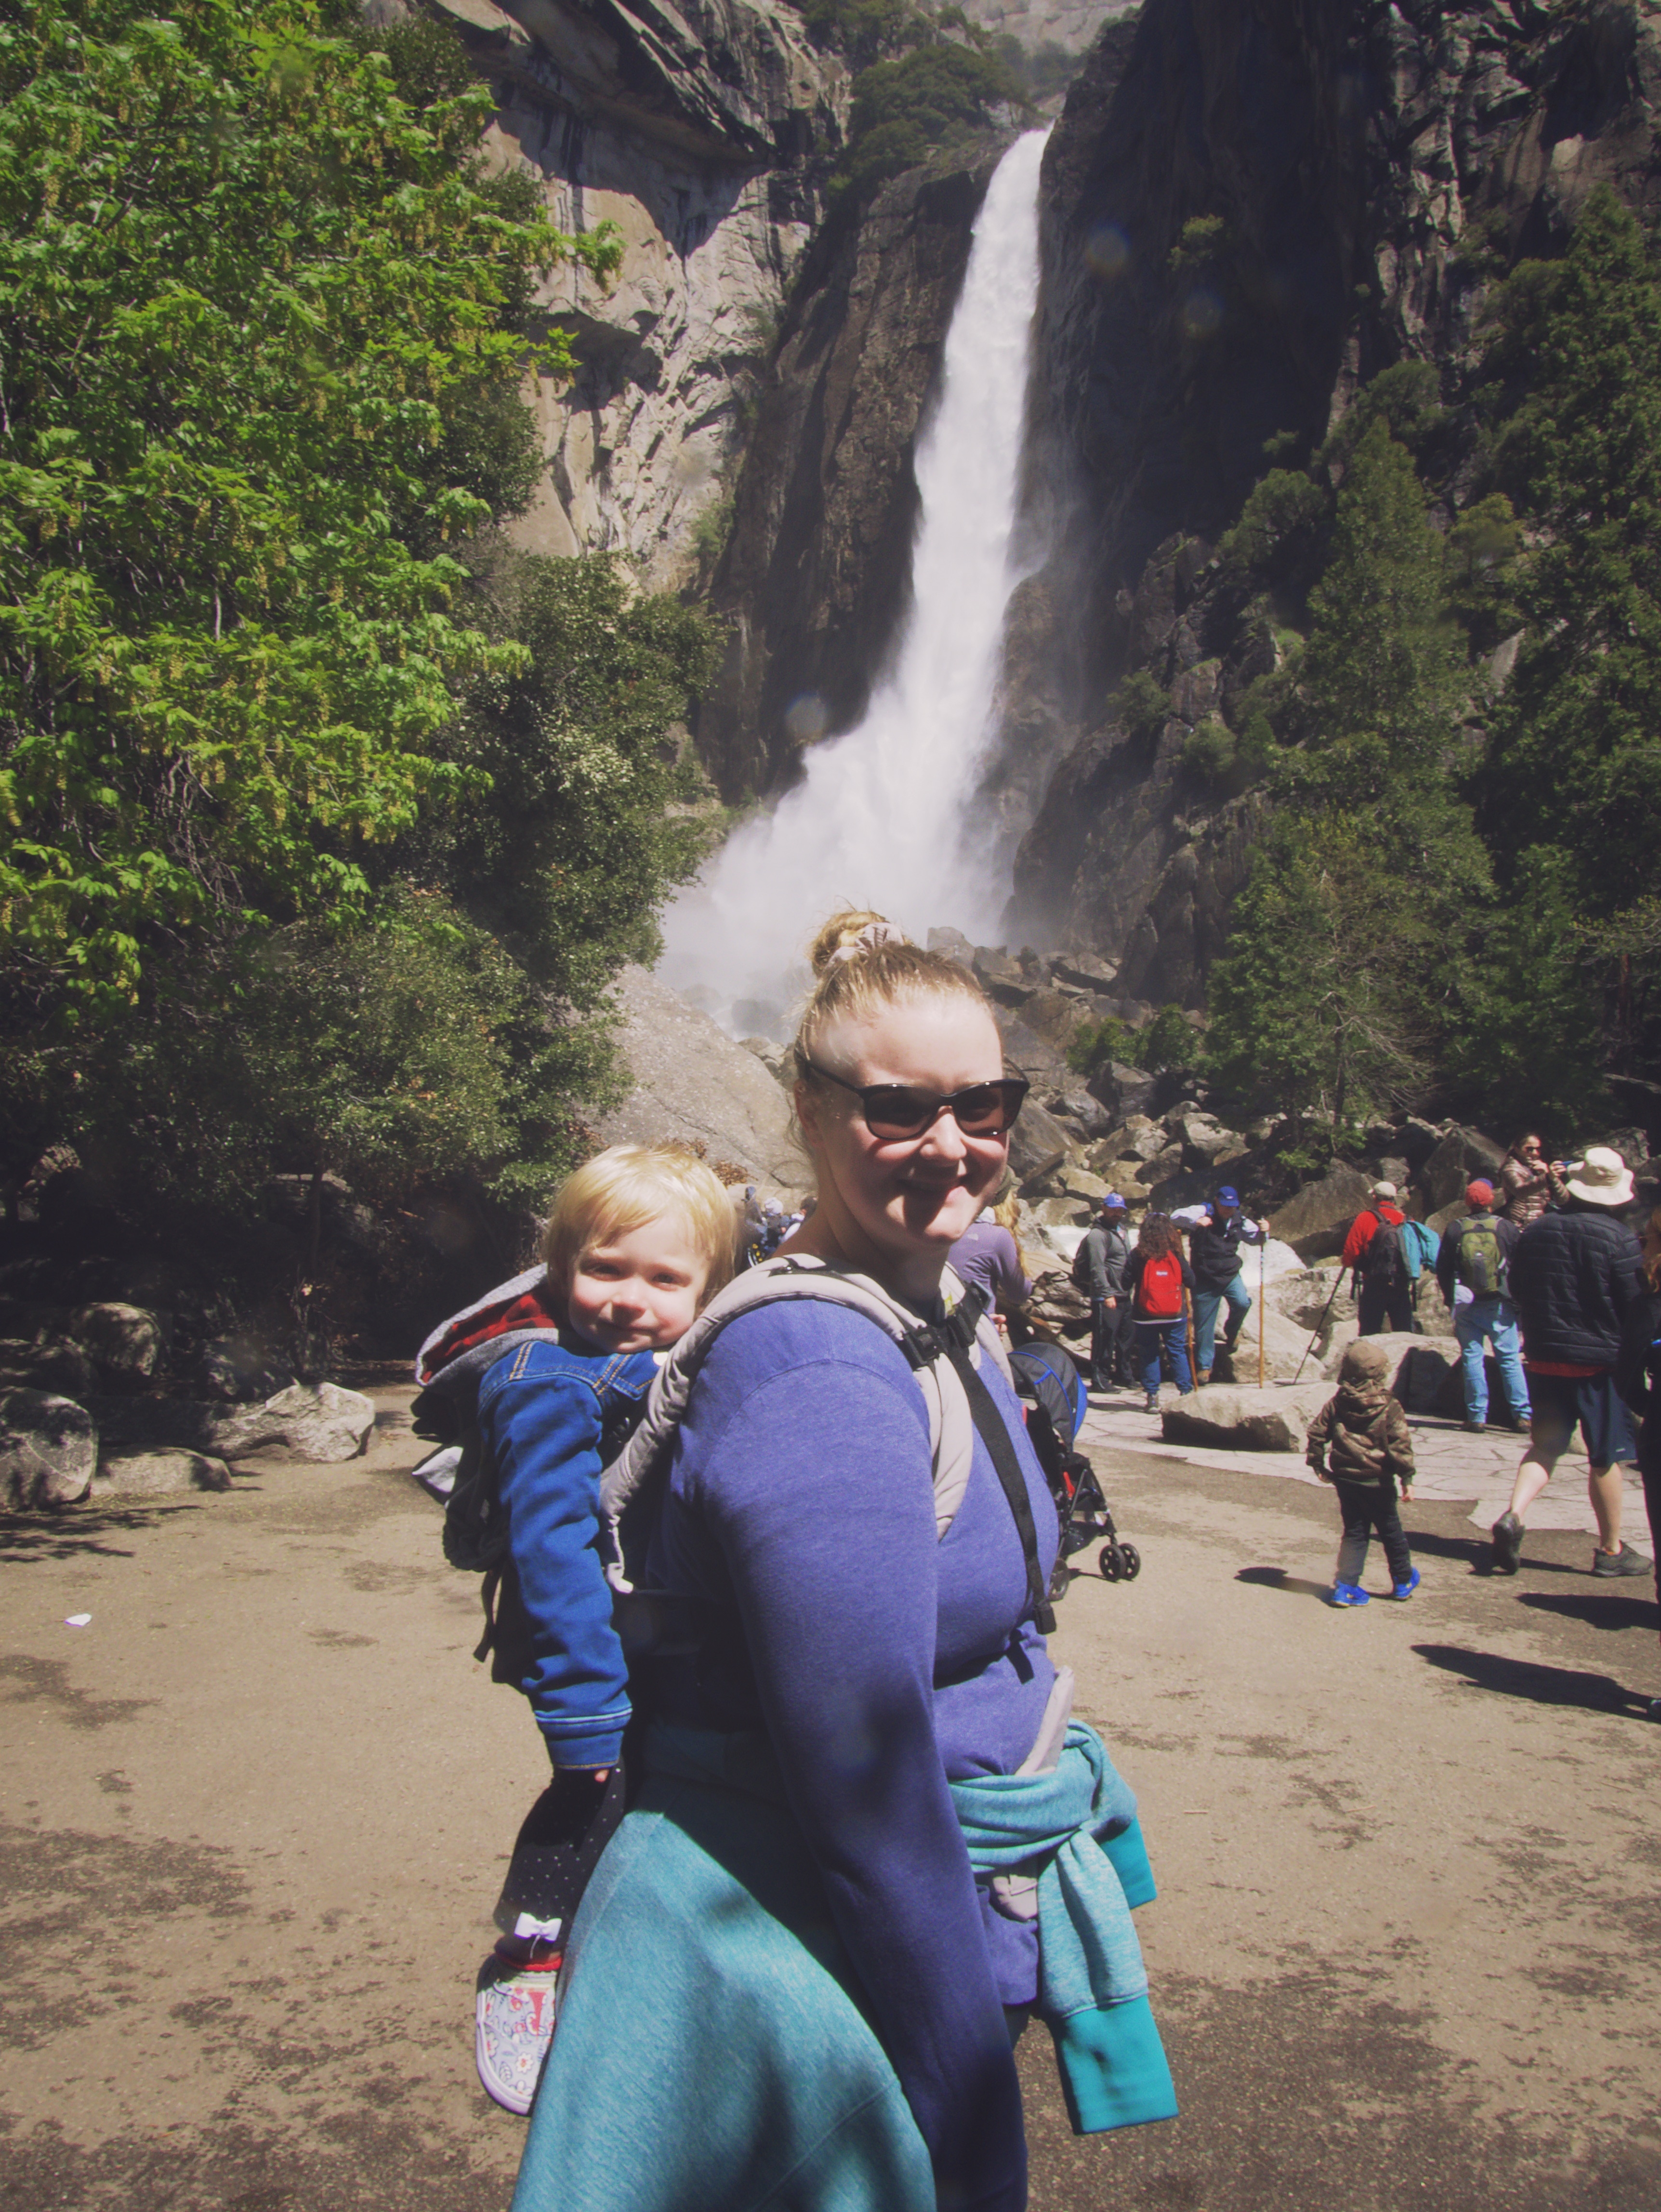 Meagan and baby at Yosemite Falls